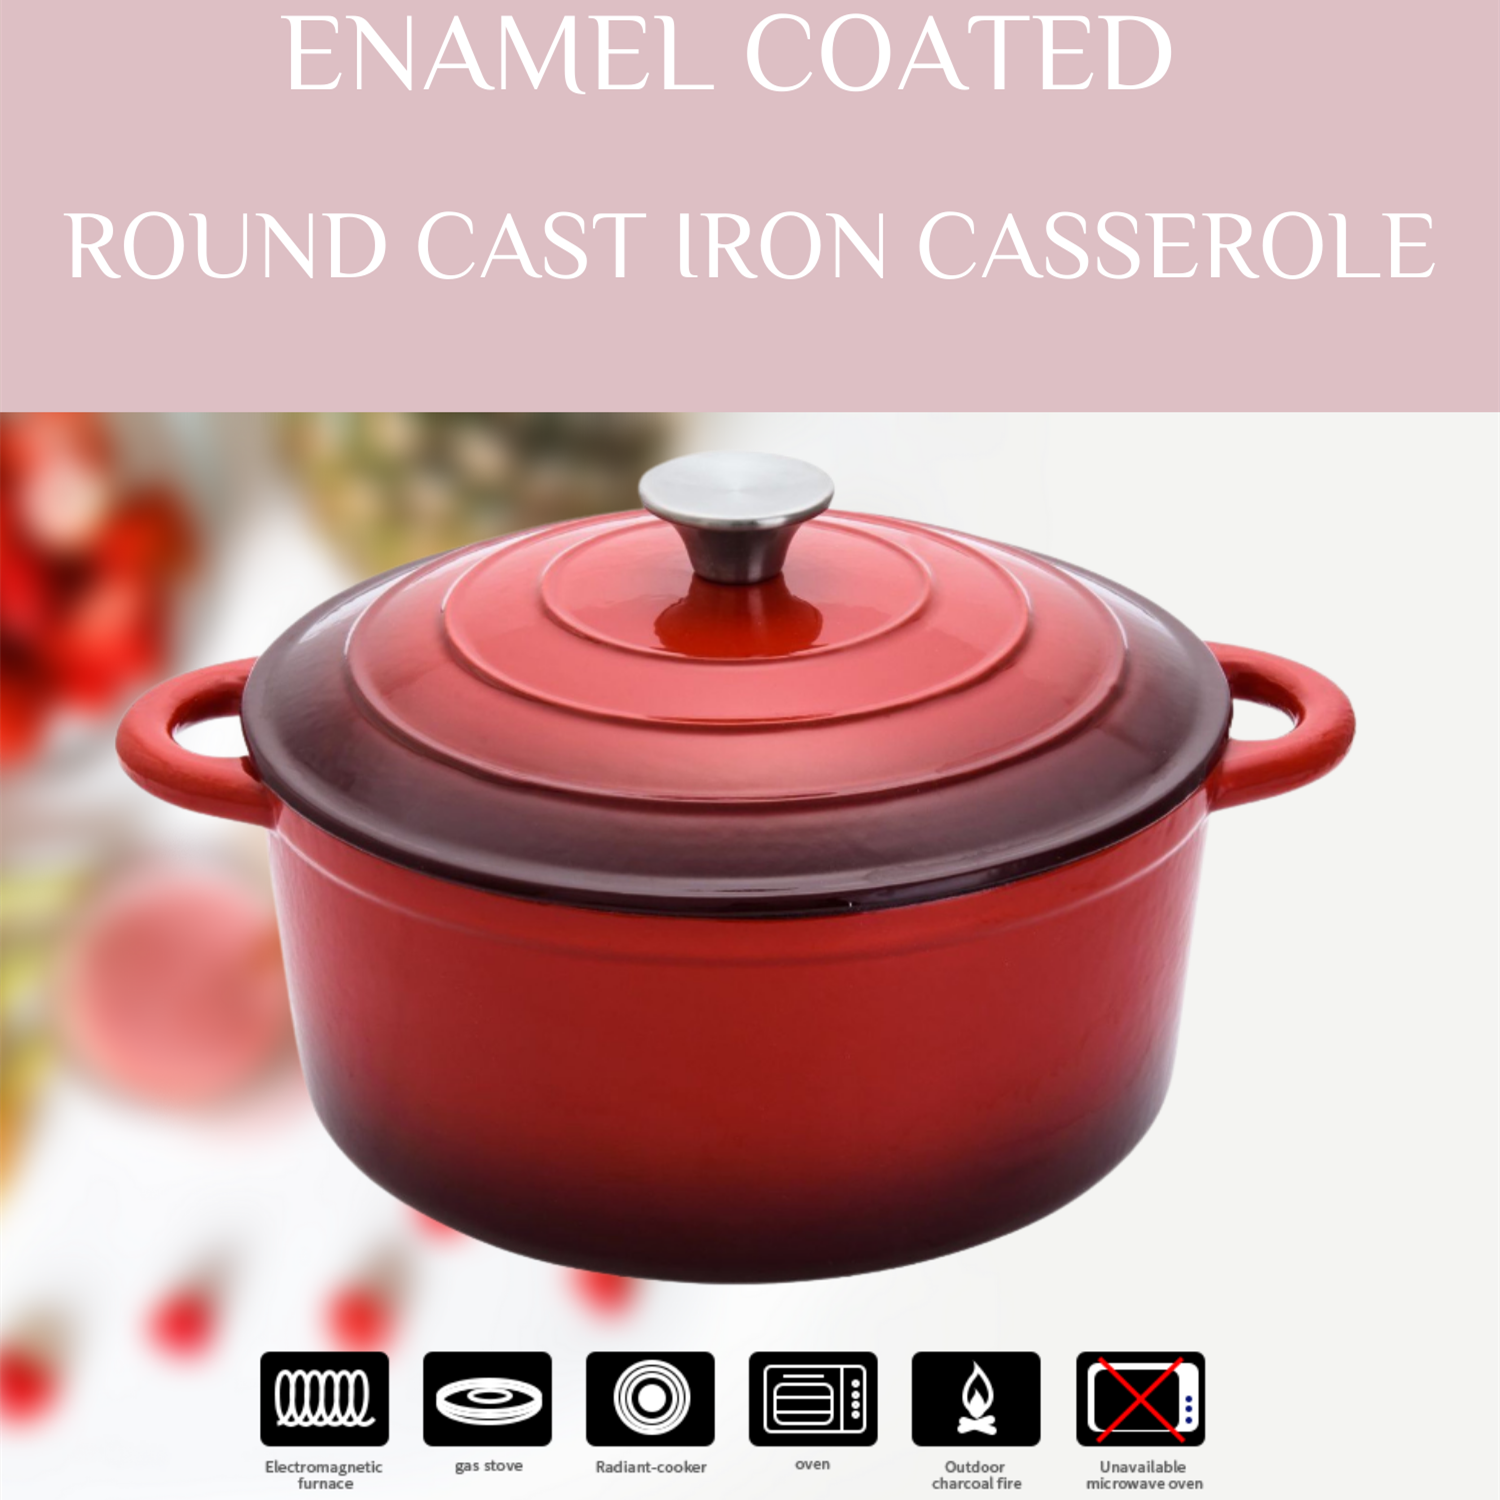 Cacerola redonda de hierro fundido recubierta de esmalte rojo de 5.3QT